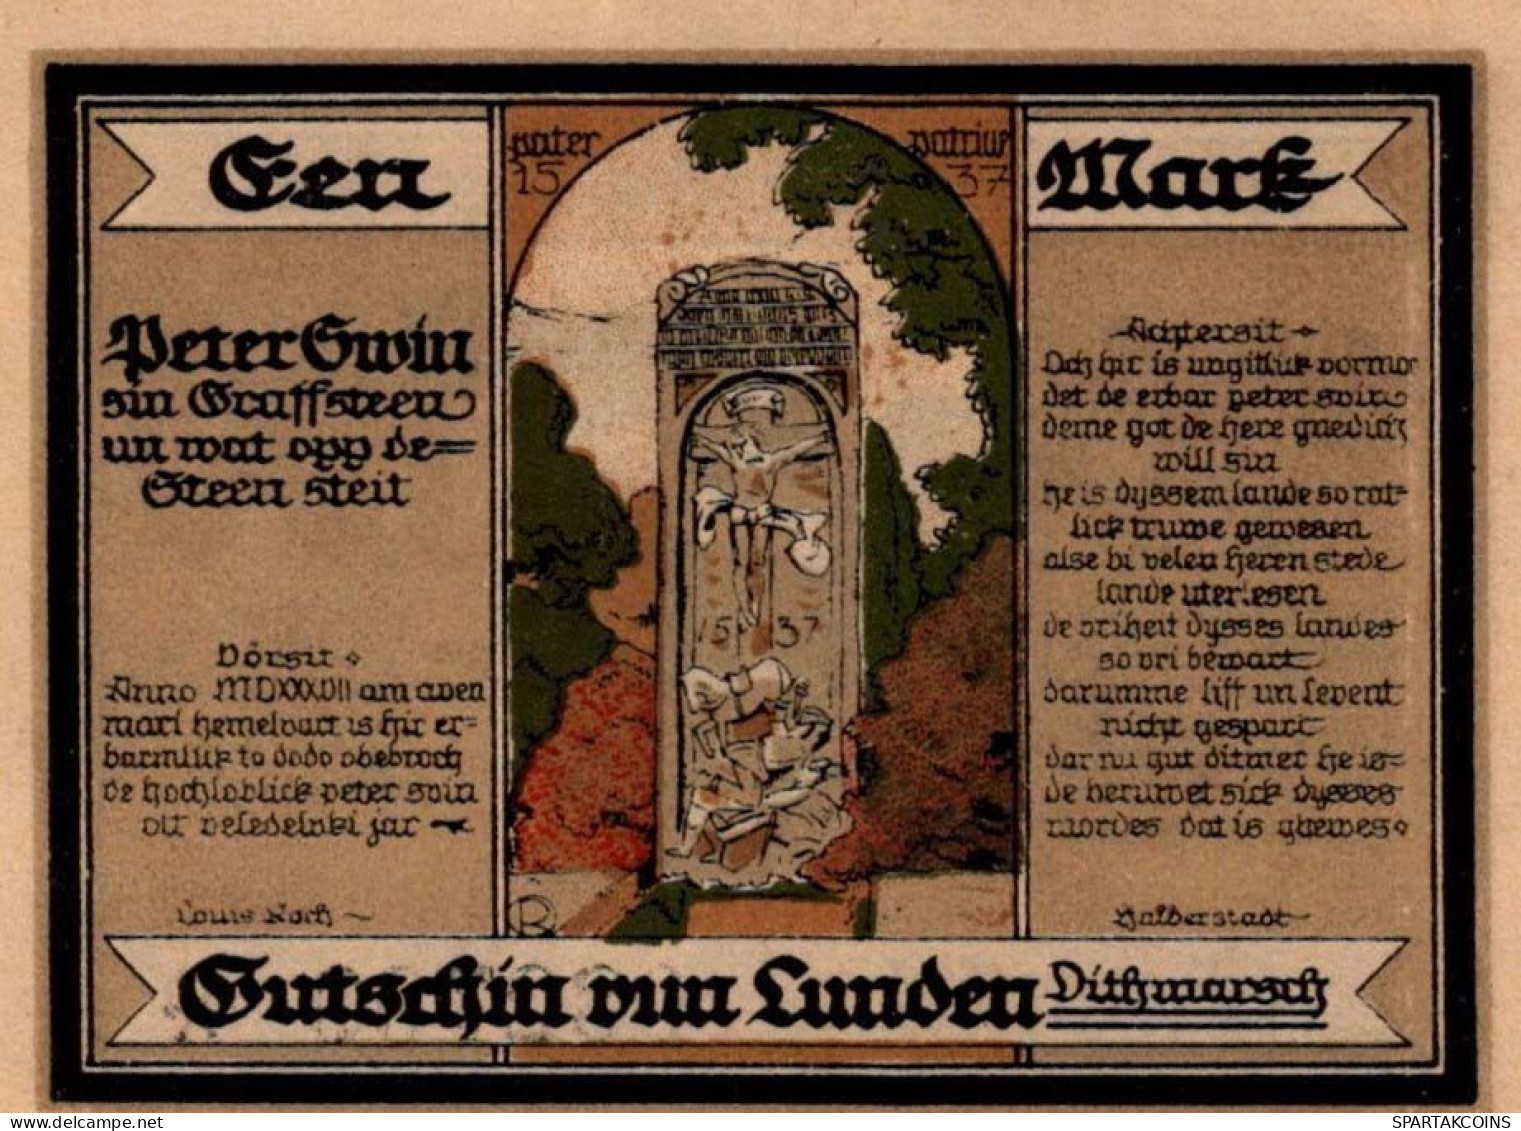 100 PFENNIG 1921 Stadt LUNDEN Schleswig-Holstein UNC DEUTSCHLAND Notgeld #PI088 - [11] Lokale Uitgaven